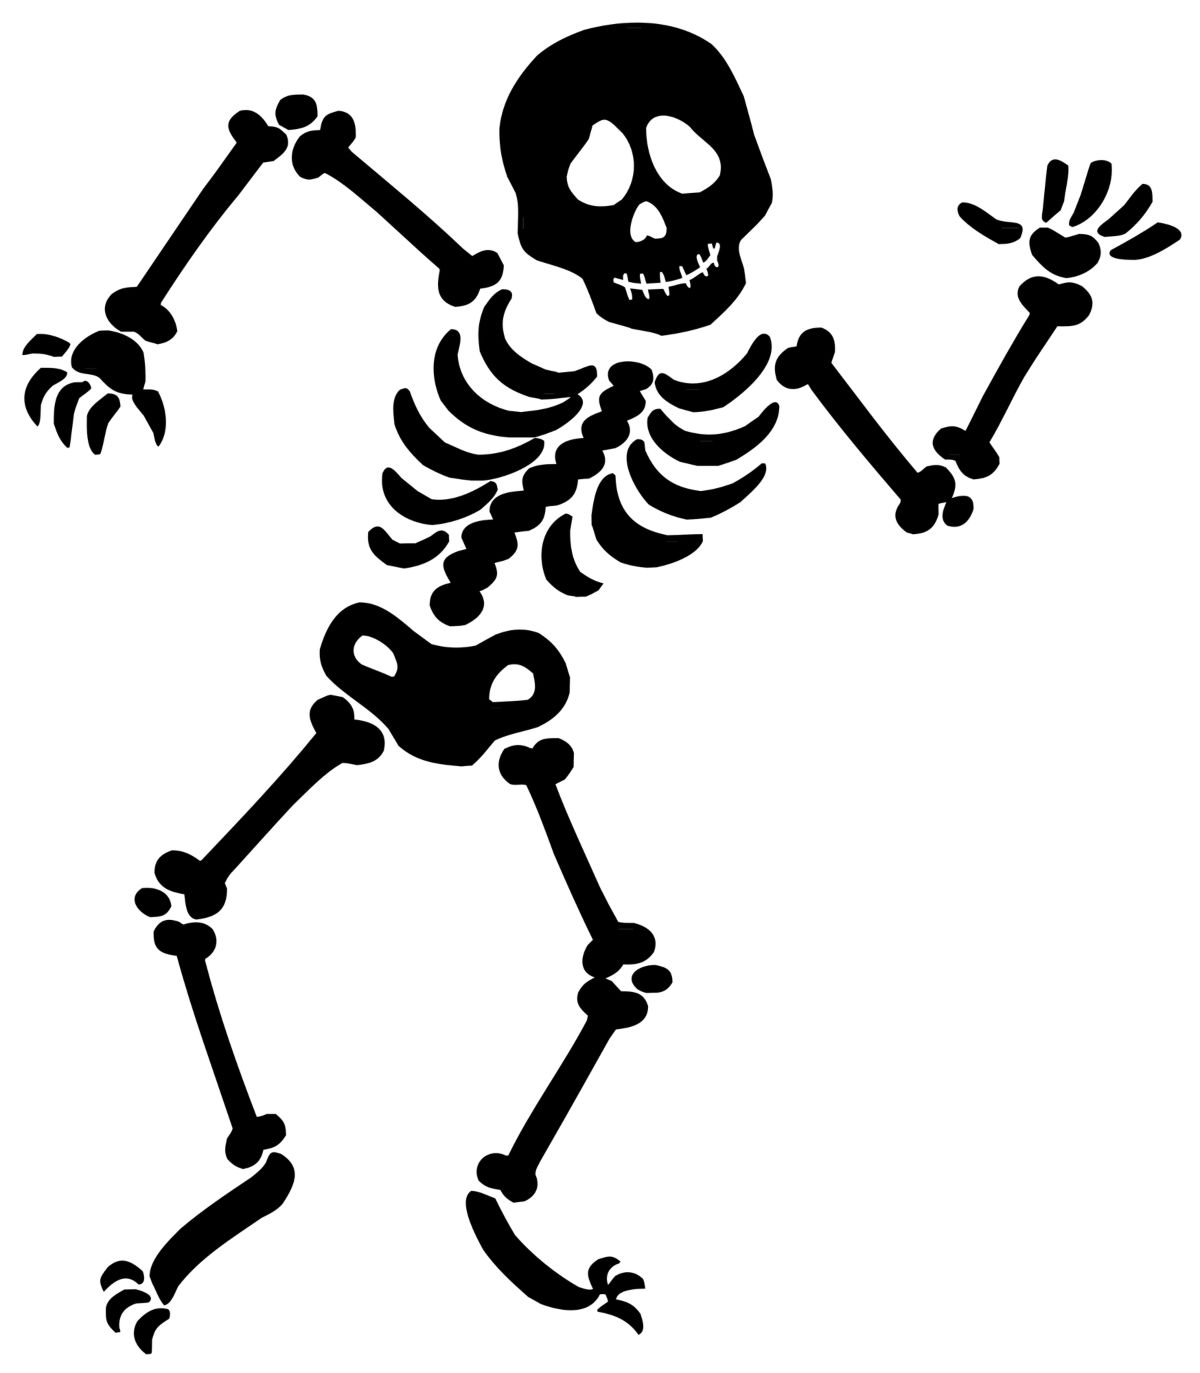 label a skeleton